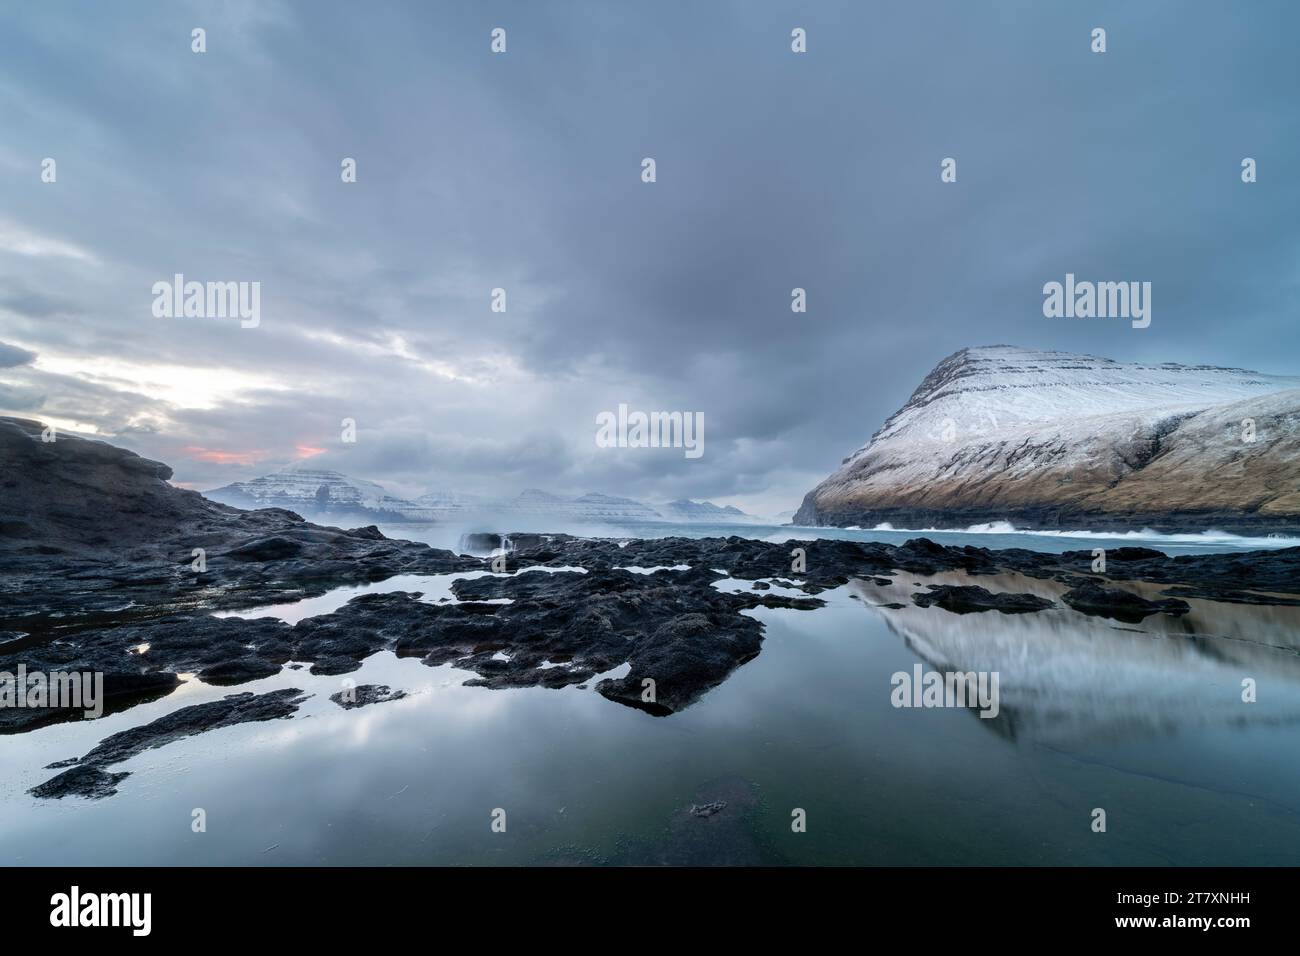 Schneebedeckte Berge und Felsbecken bei Ebbe, Gjogv Village, Eysturoy Island, Färöer Inseln, Dänemark, Europa Stockfoto